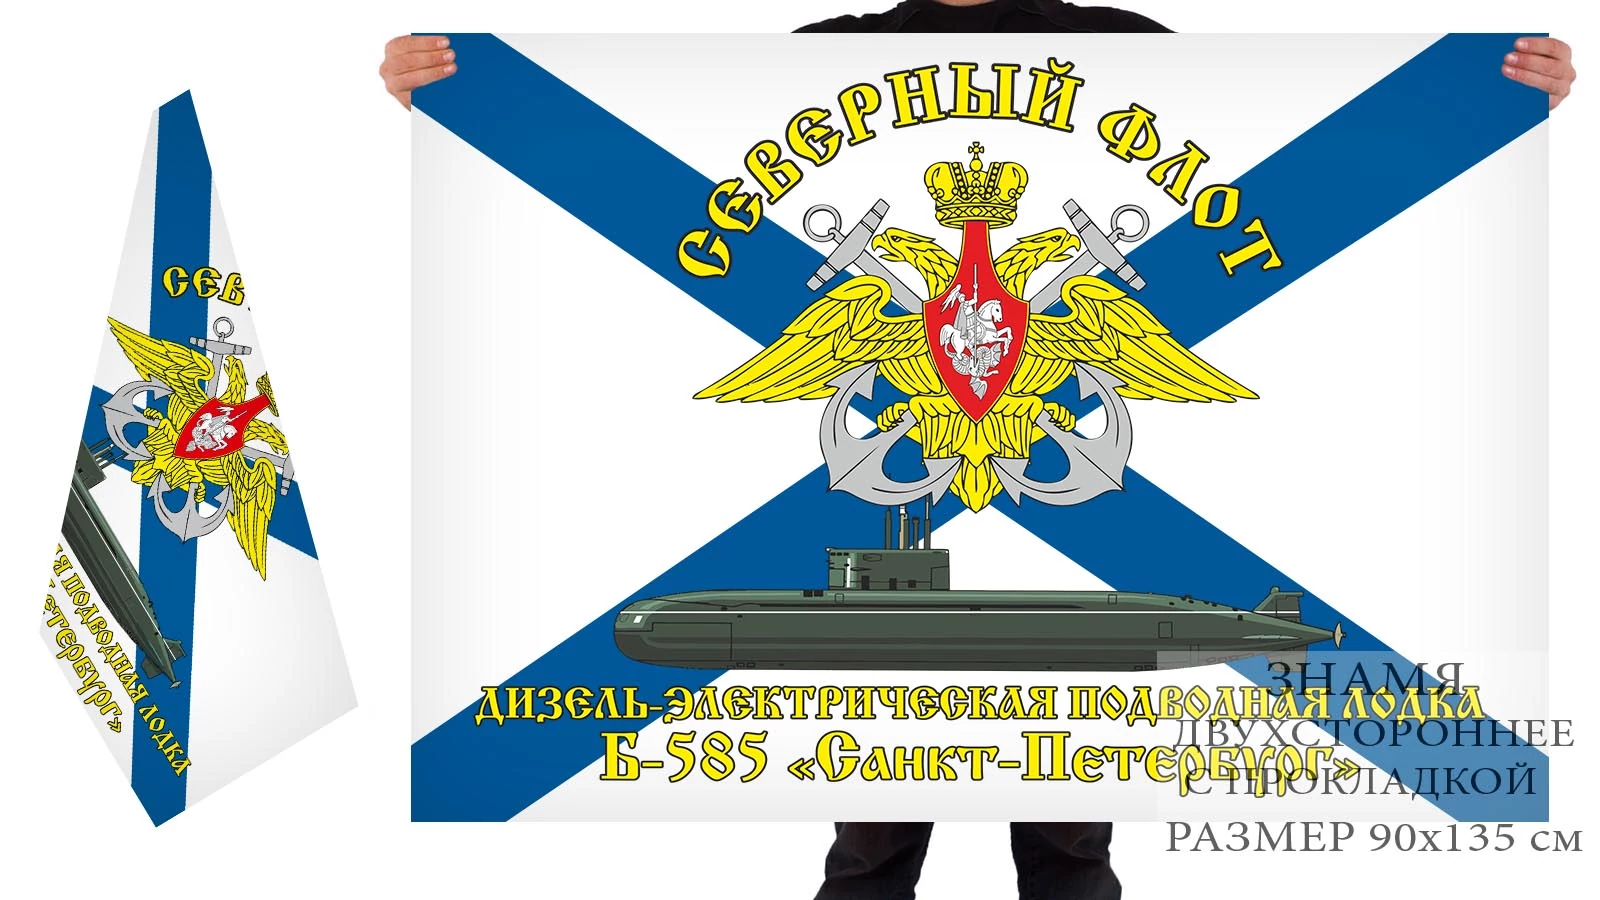 Двусторонний флаг ДЭПЛ Б-585 «Санкт-Петербург»